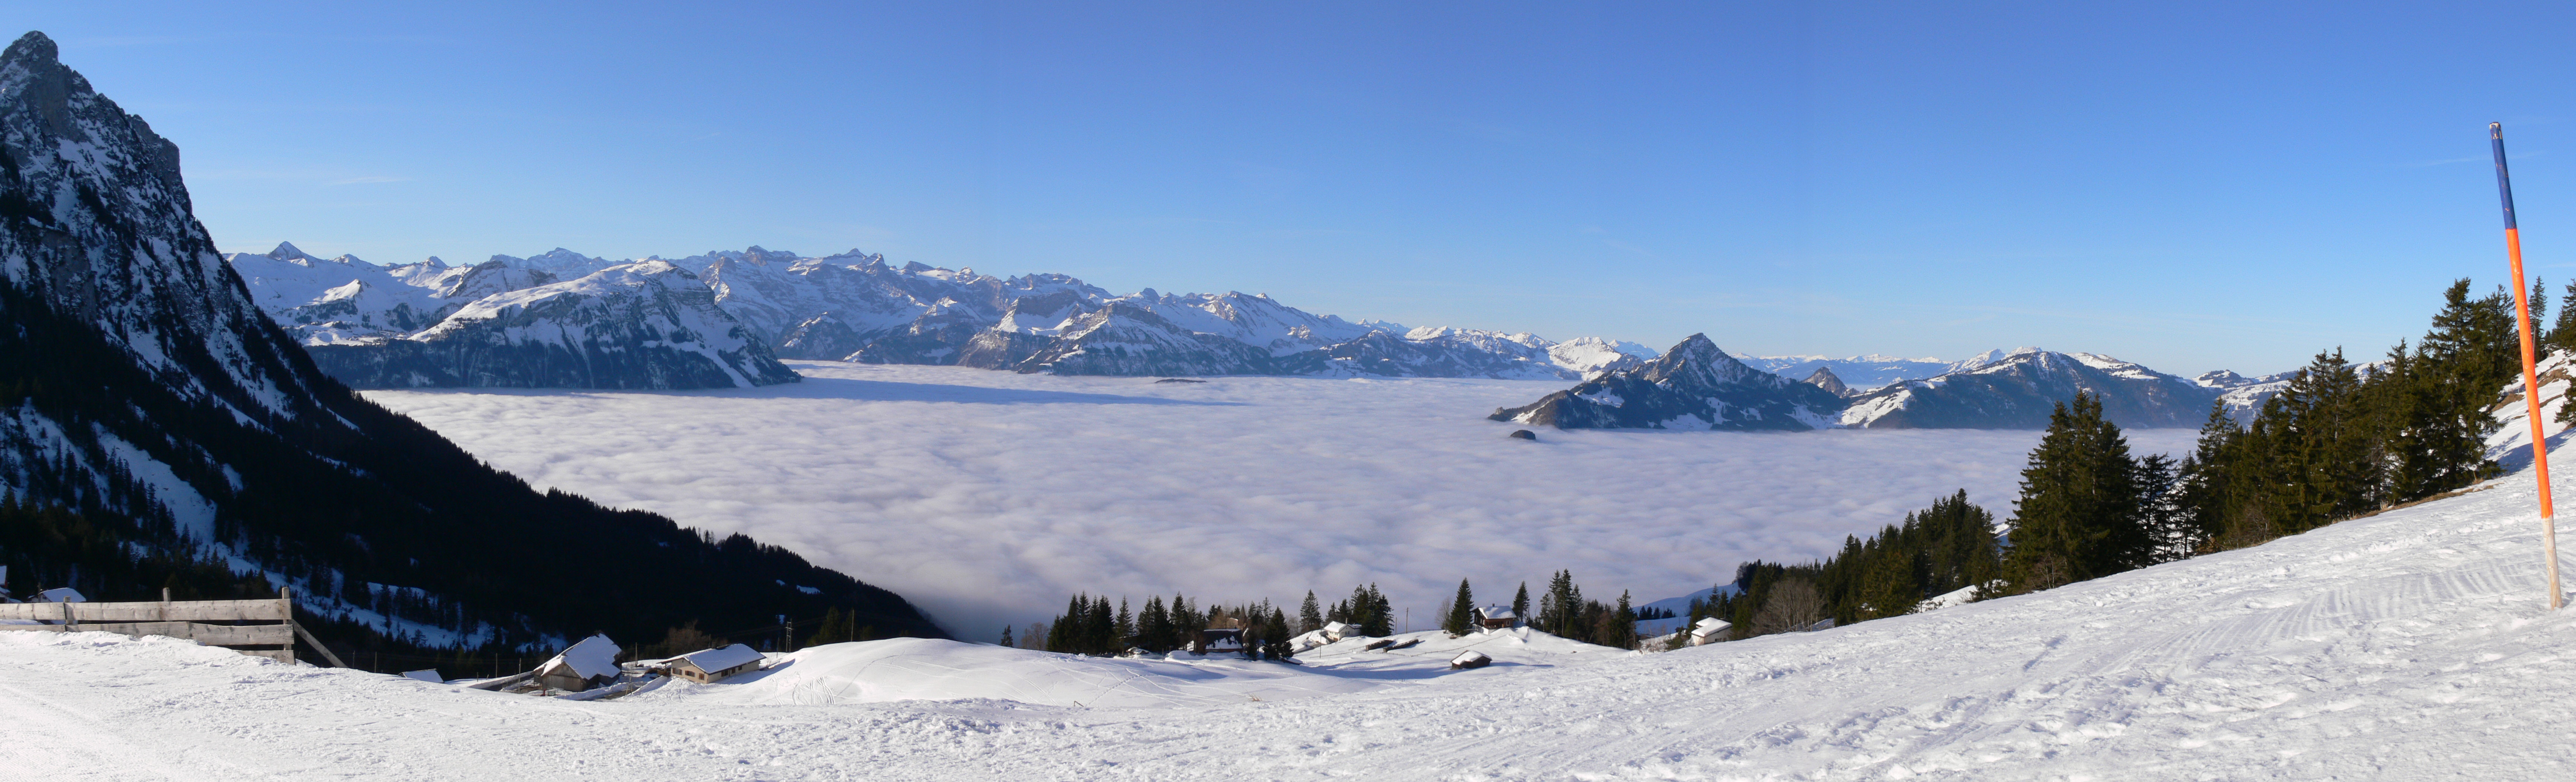 Brunni-Alpthal - Nebelmeer auf der Haggenegg